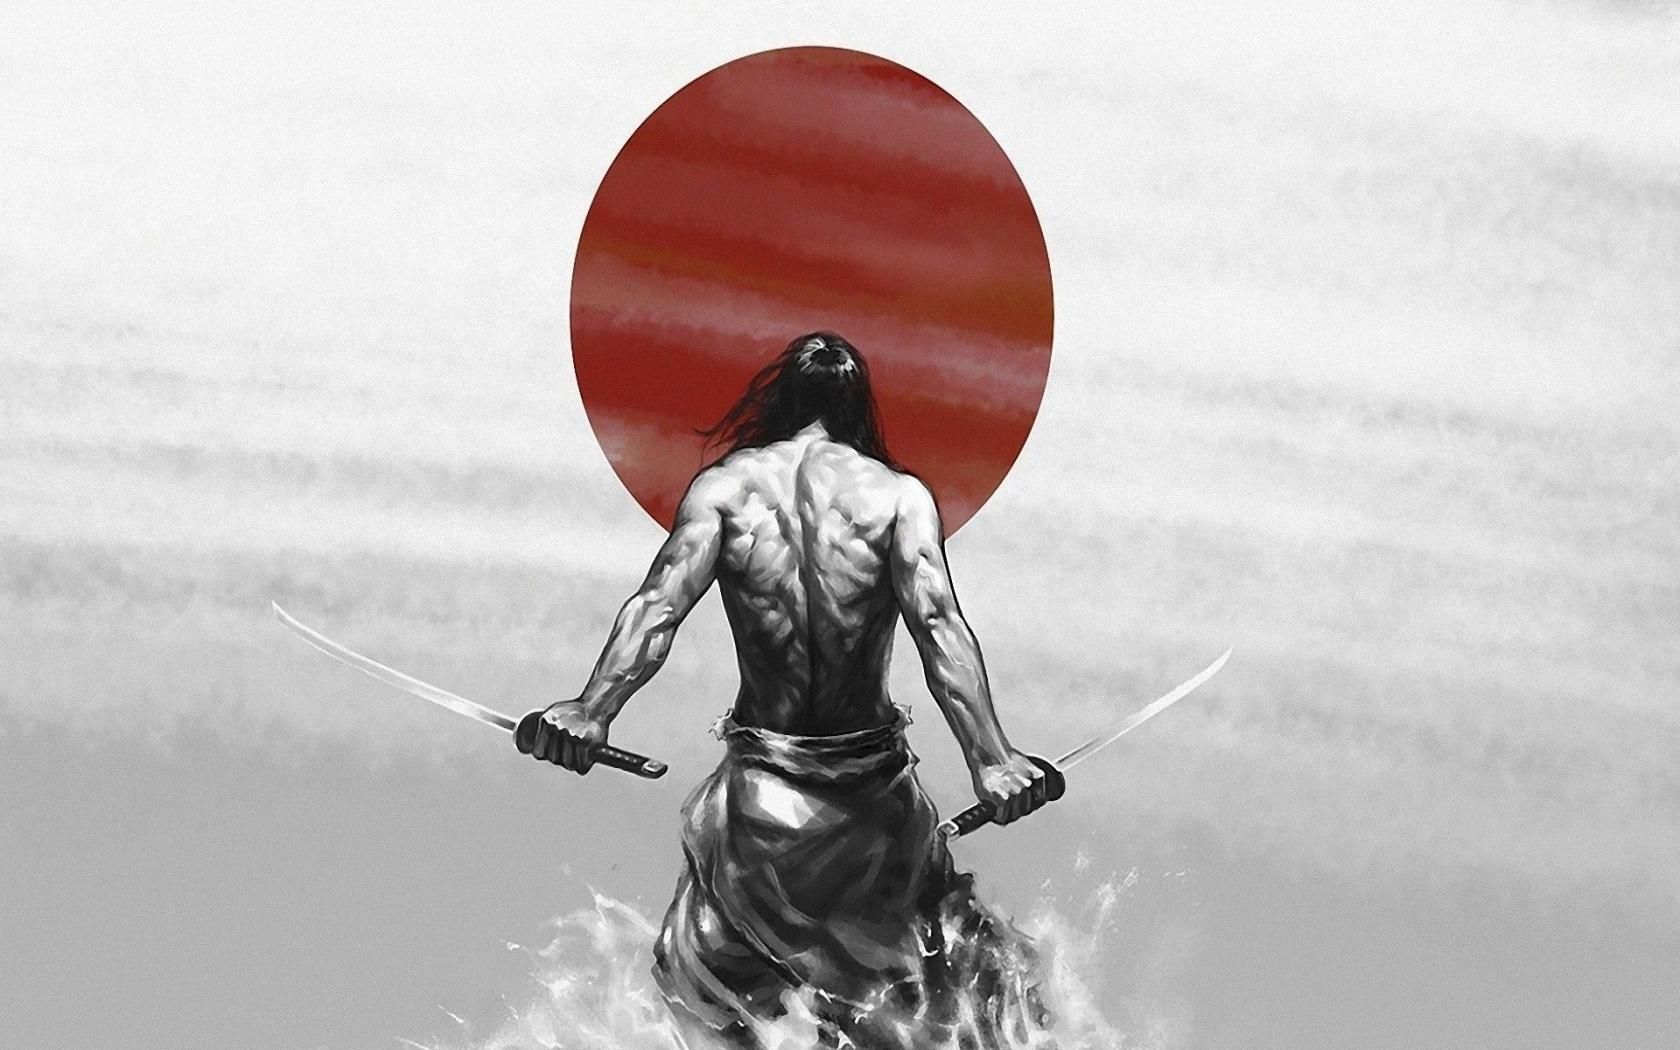 fond d'écran guerrier samouraï,illustration,la photographie,personnage fictif